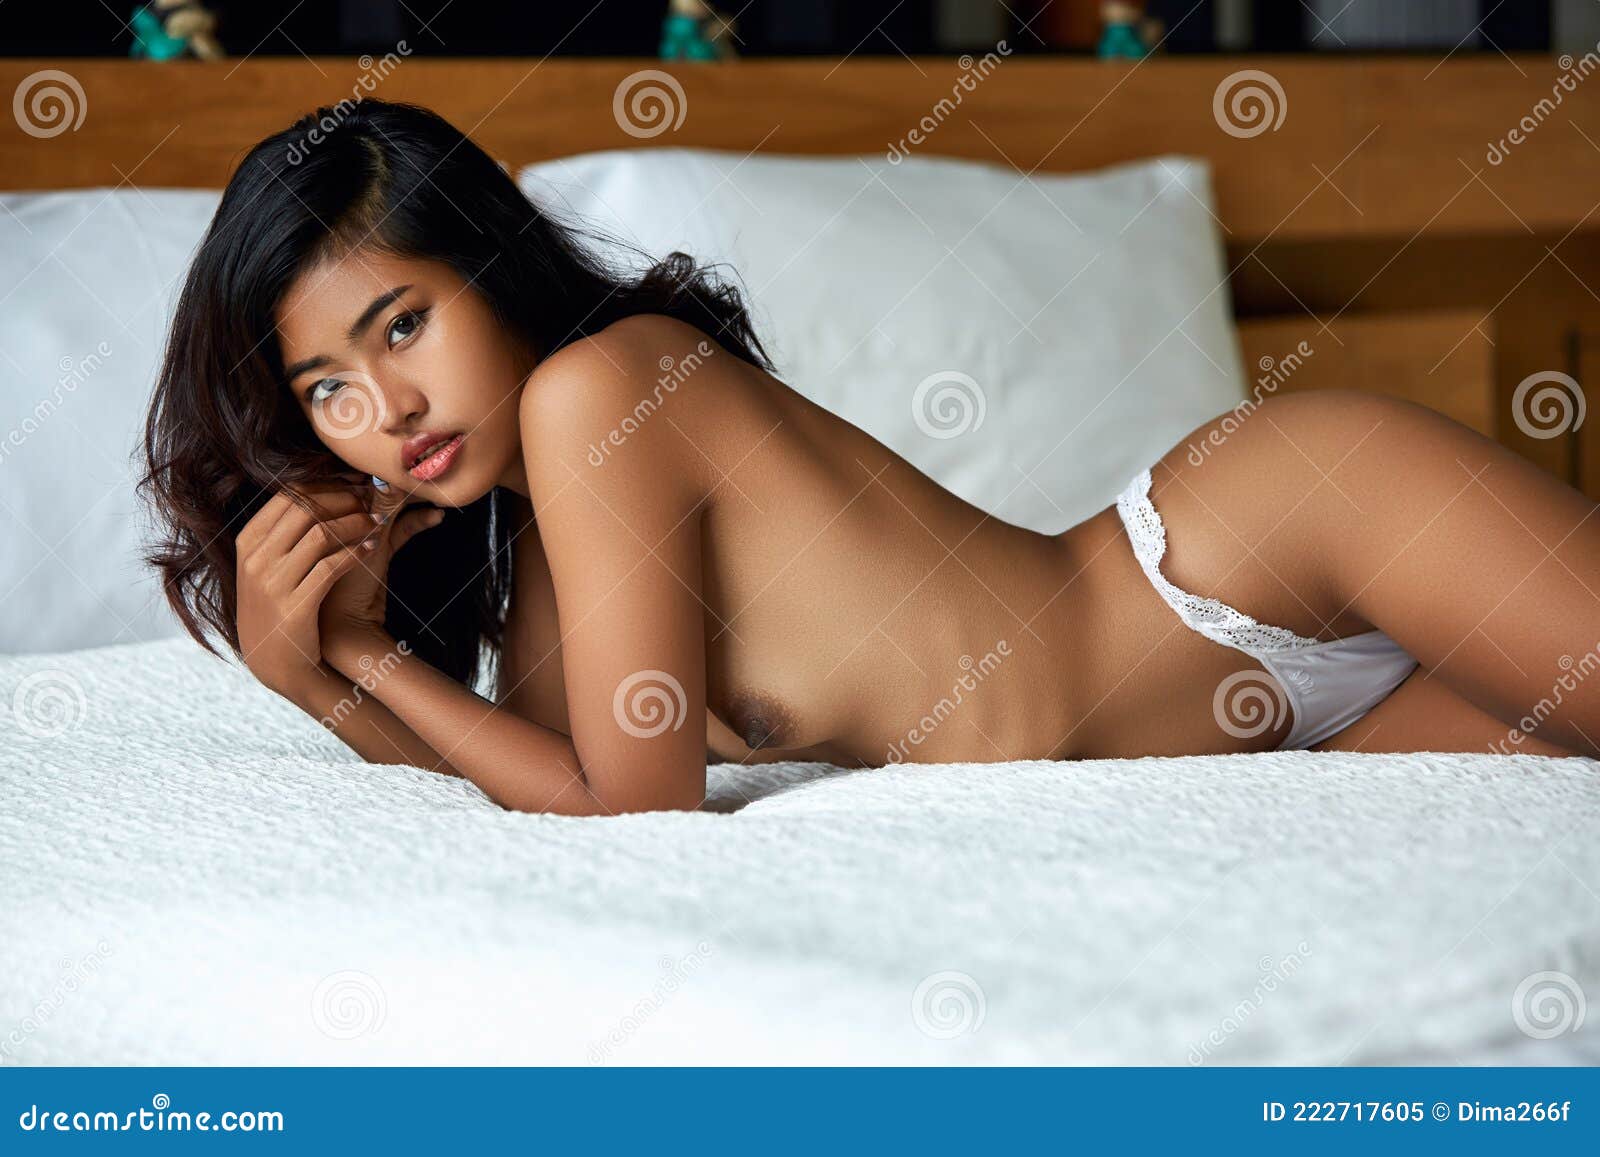 голая азиатка на диване фото 59